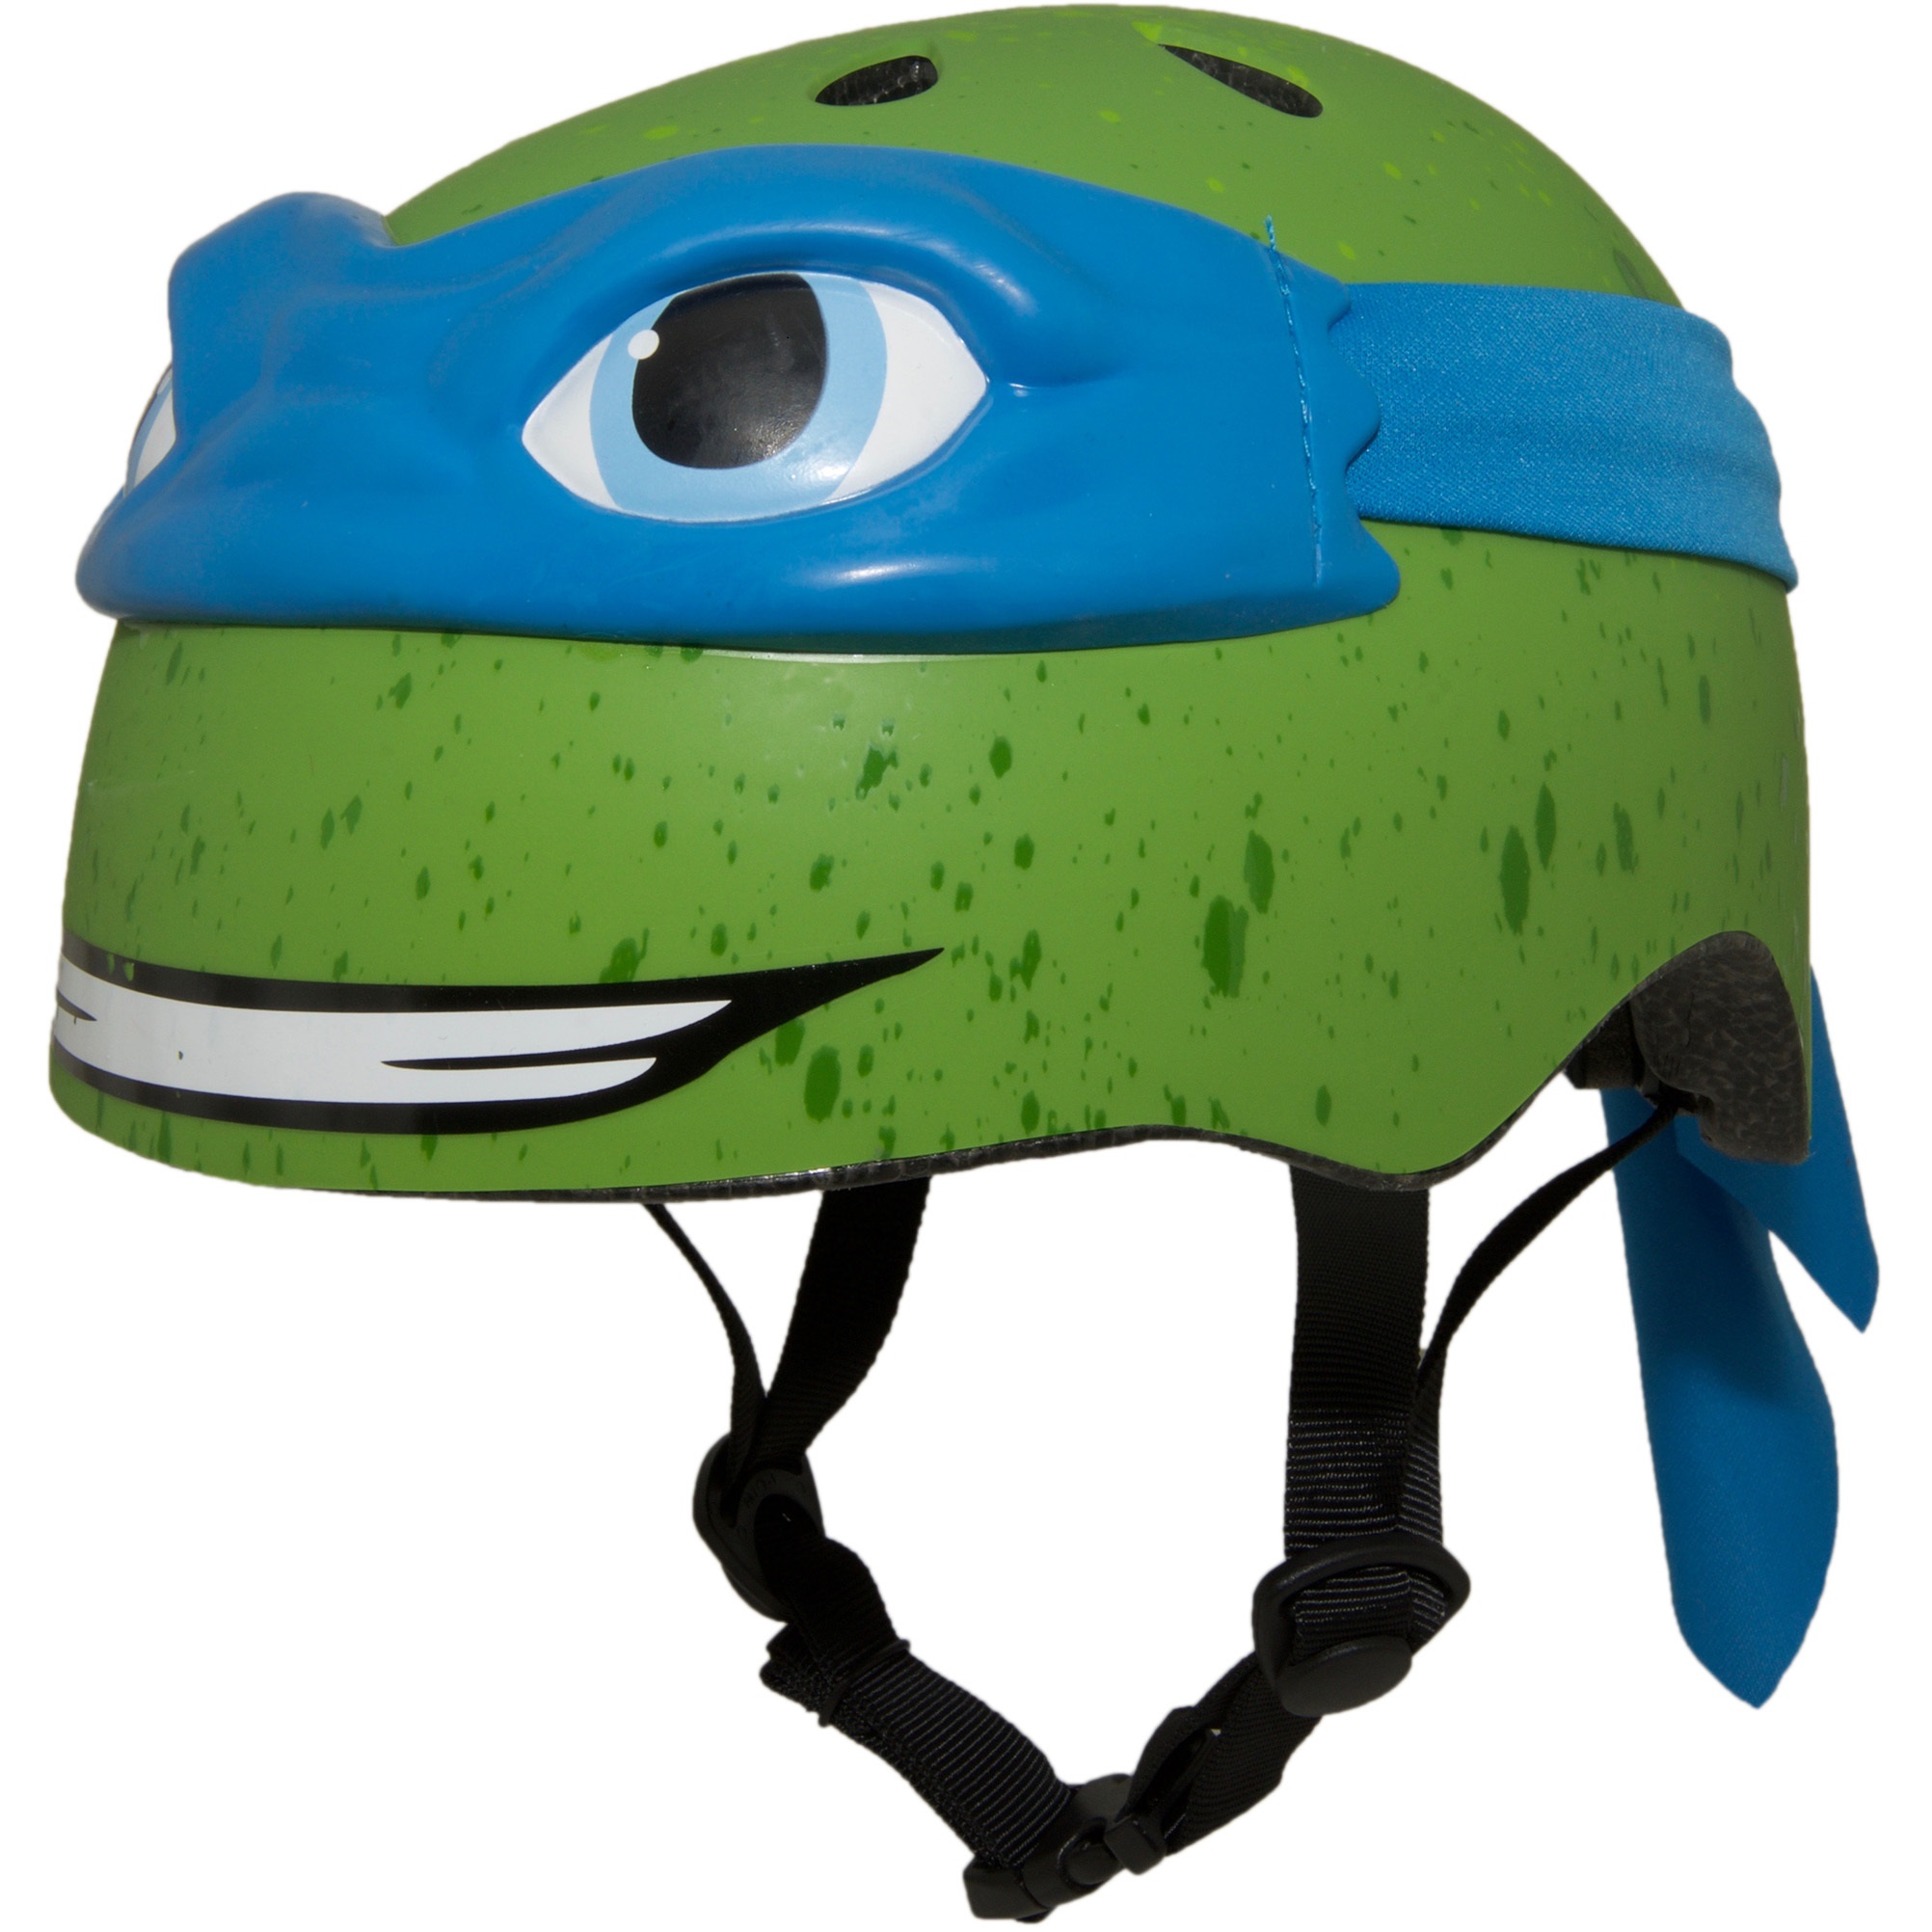 Ninja Turtles Bike Helmets - KibrisPDR